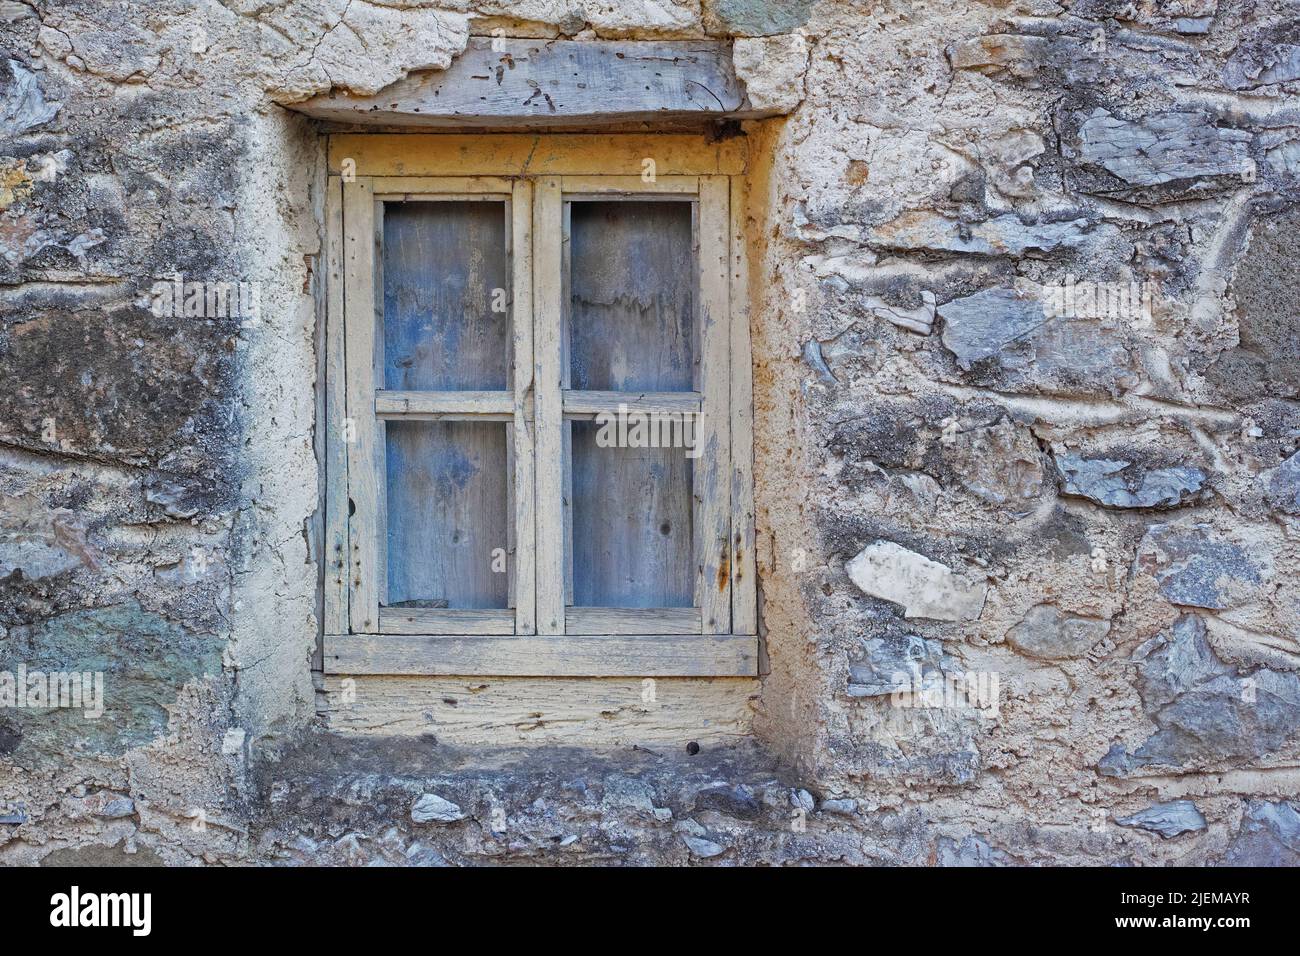 Nahaufnahme eines Holzfensters in einer Steinmauer eines alten grauen Hauses. Rechteckiger Fensterrahmen in einem historischen, rustikalen Gebäude. Architektur und Stockfoto